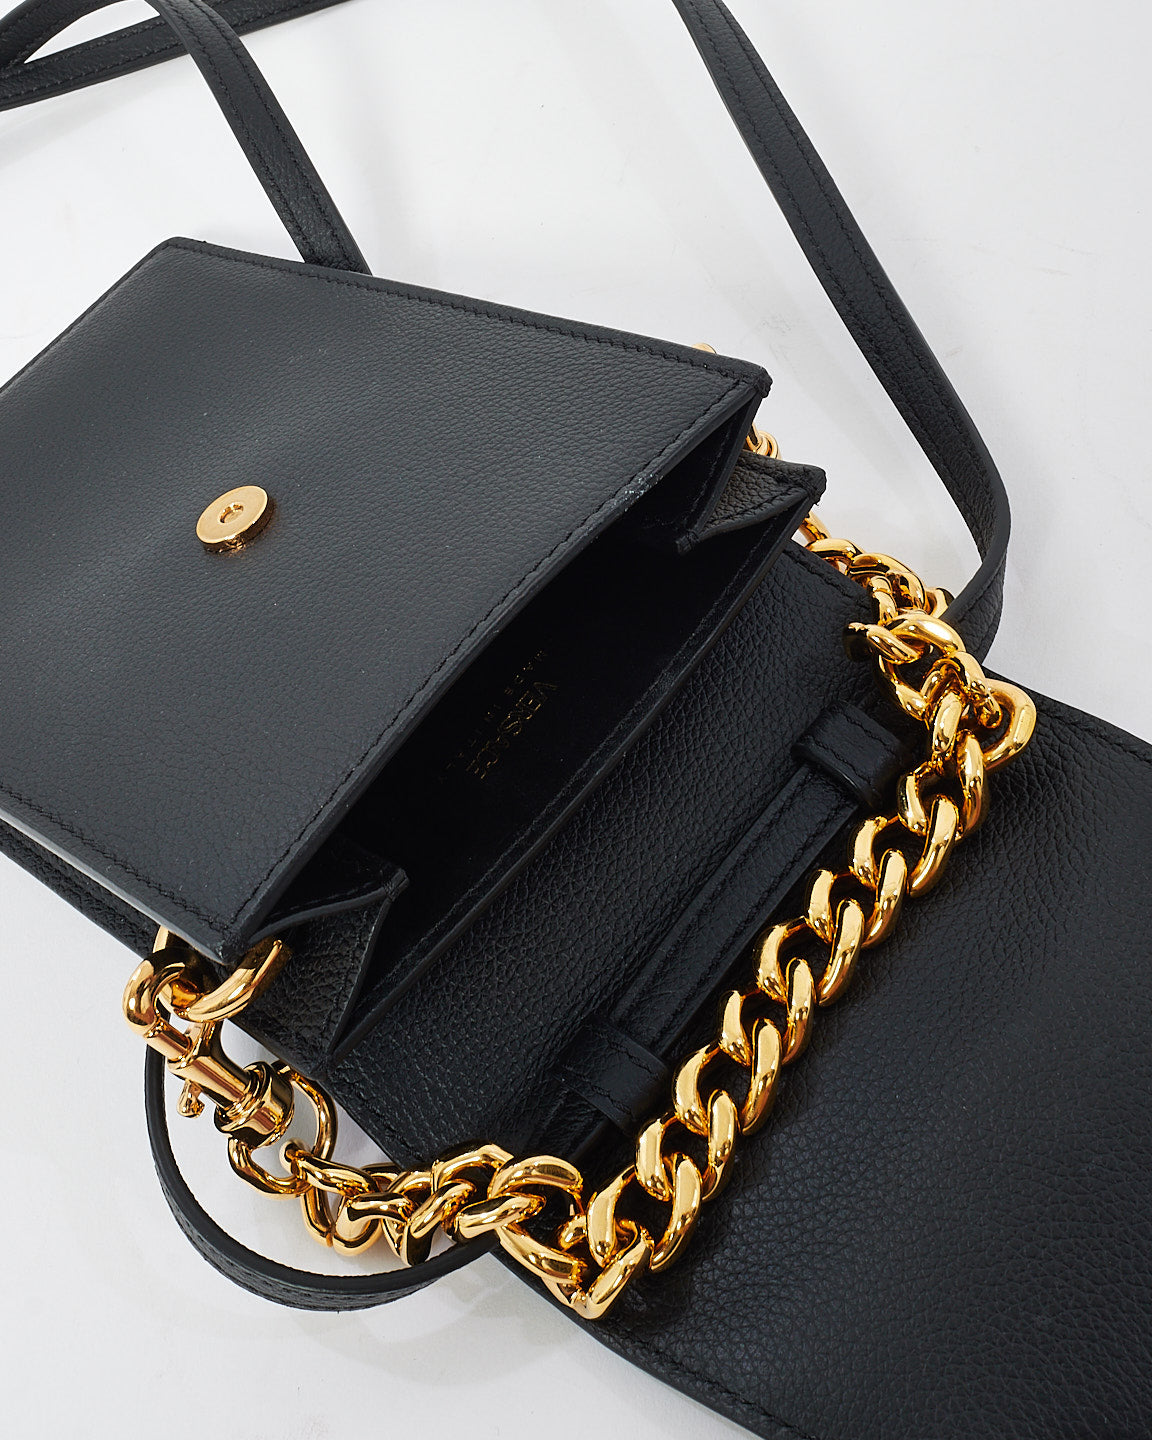 Versace Black Leather Medusa Head Mini Phone Bag